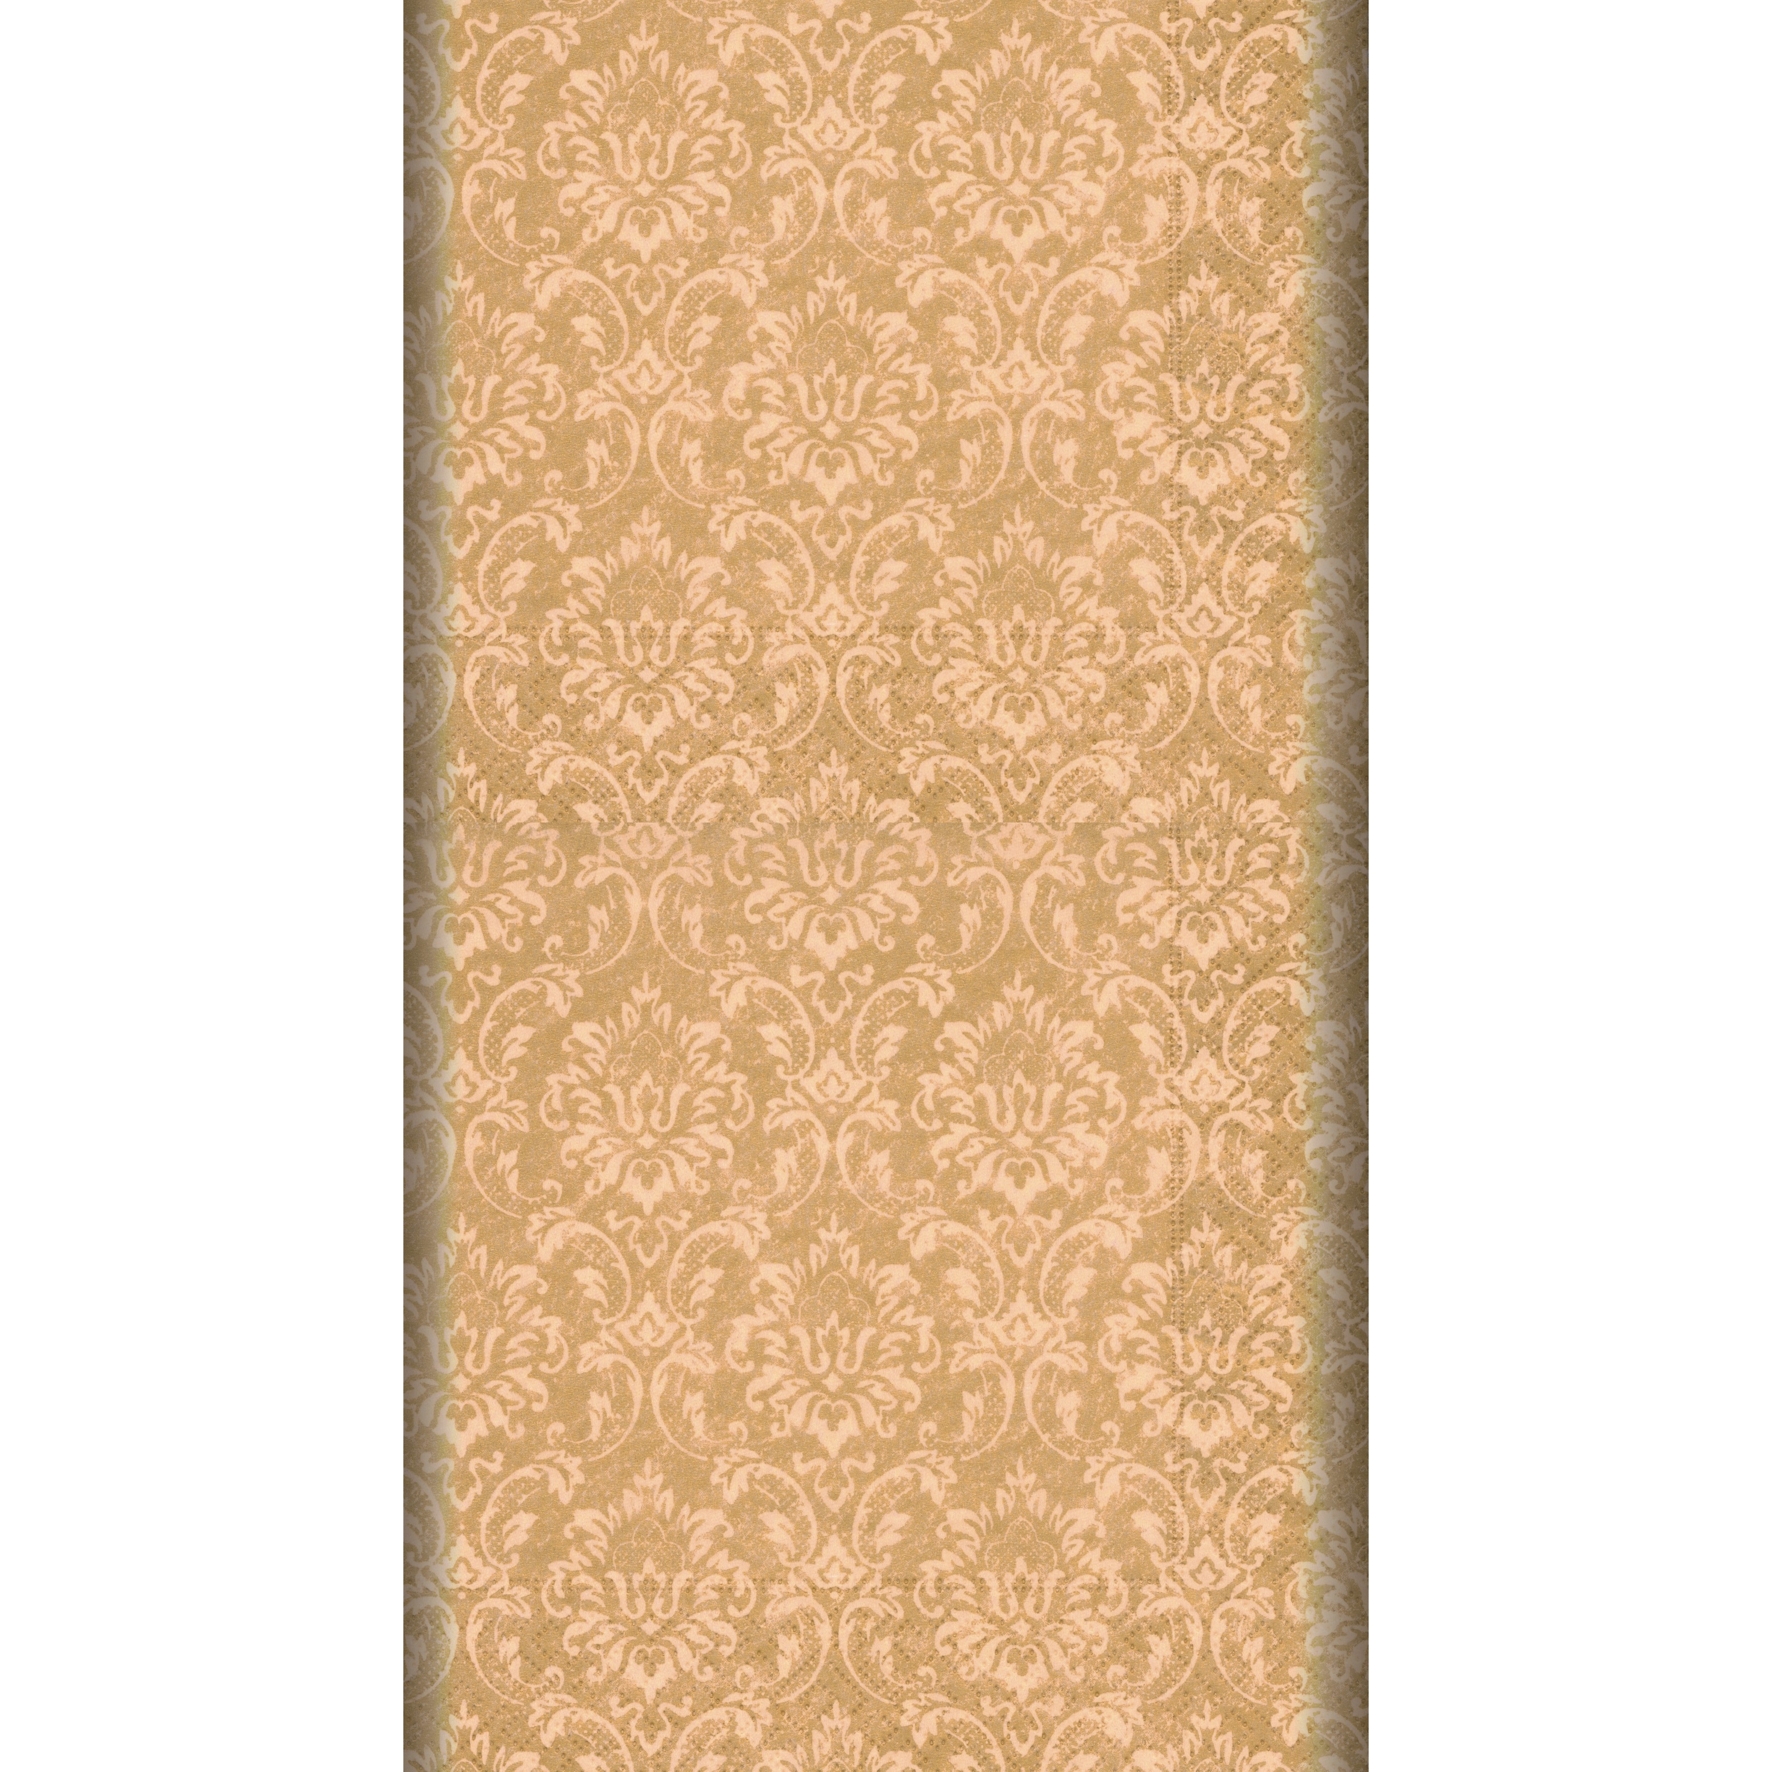 obrus z nadrukiem ornament złoty 1,2*1,8m